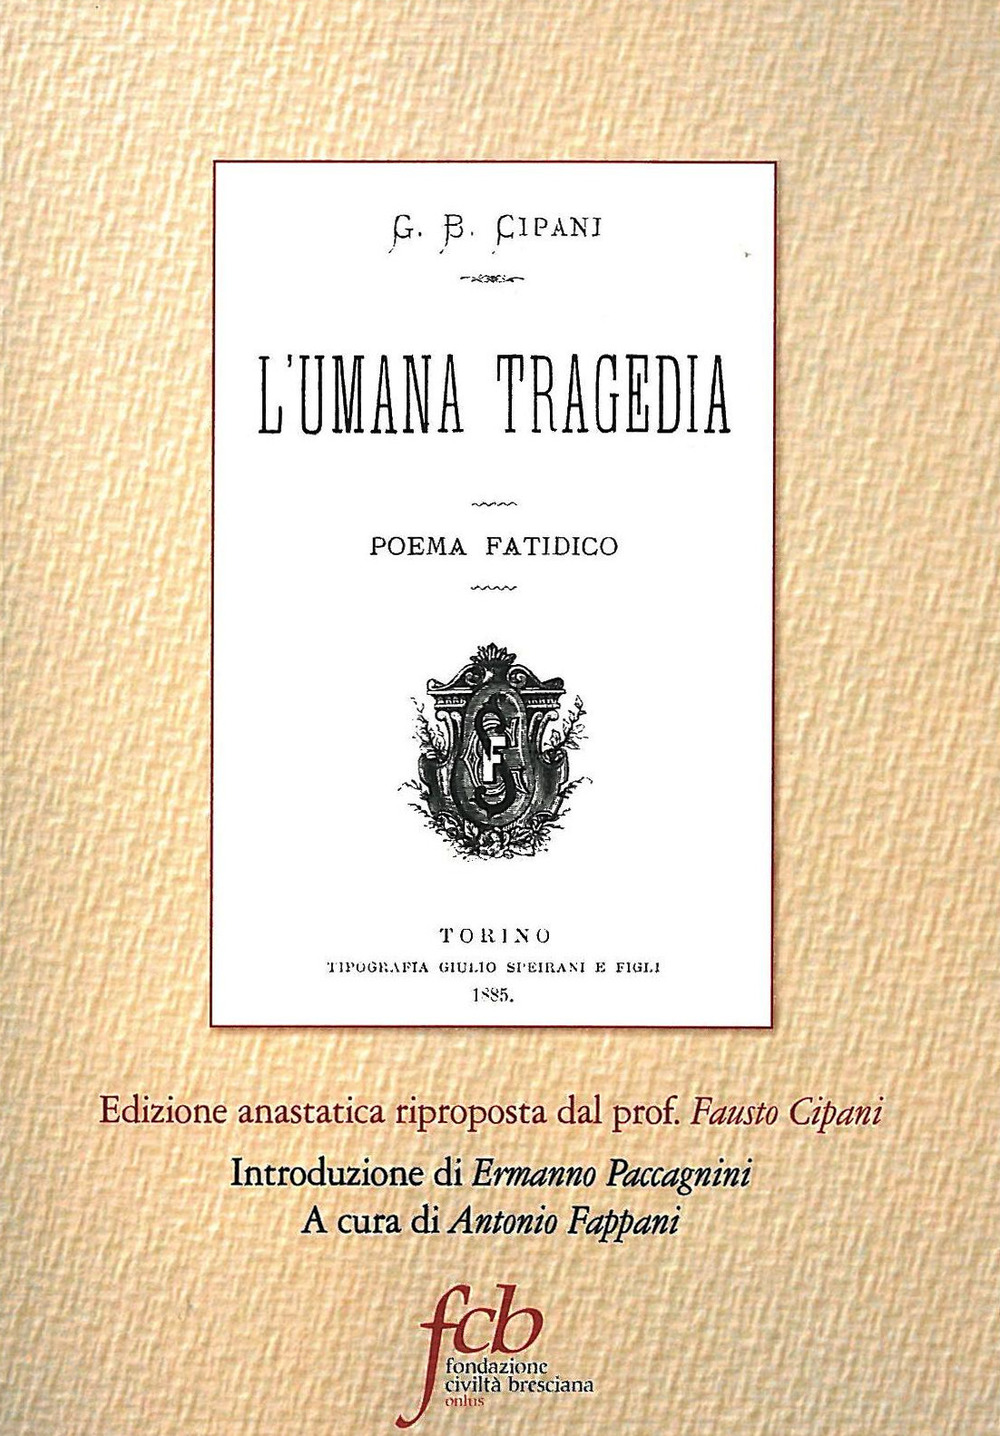 L'umana tragedia. Poema fatidico (rist. anast. Torino, 1885)